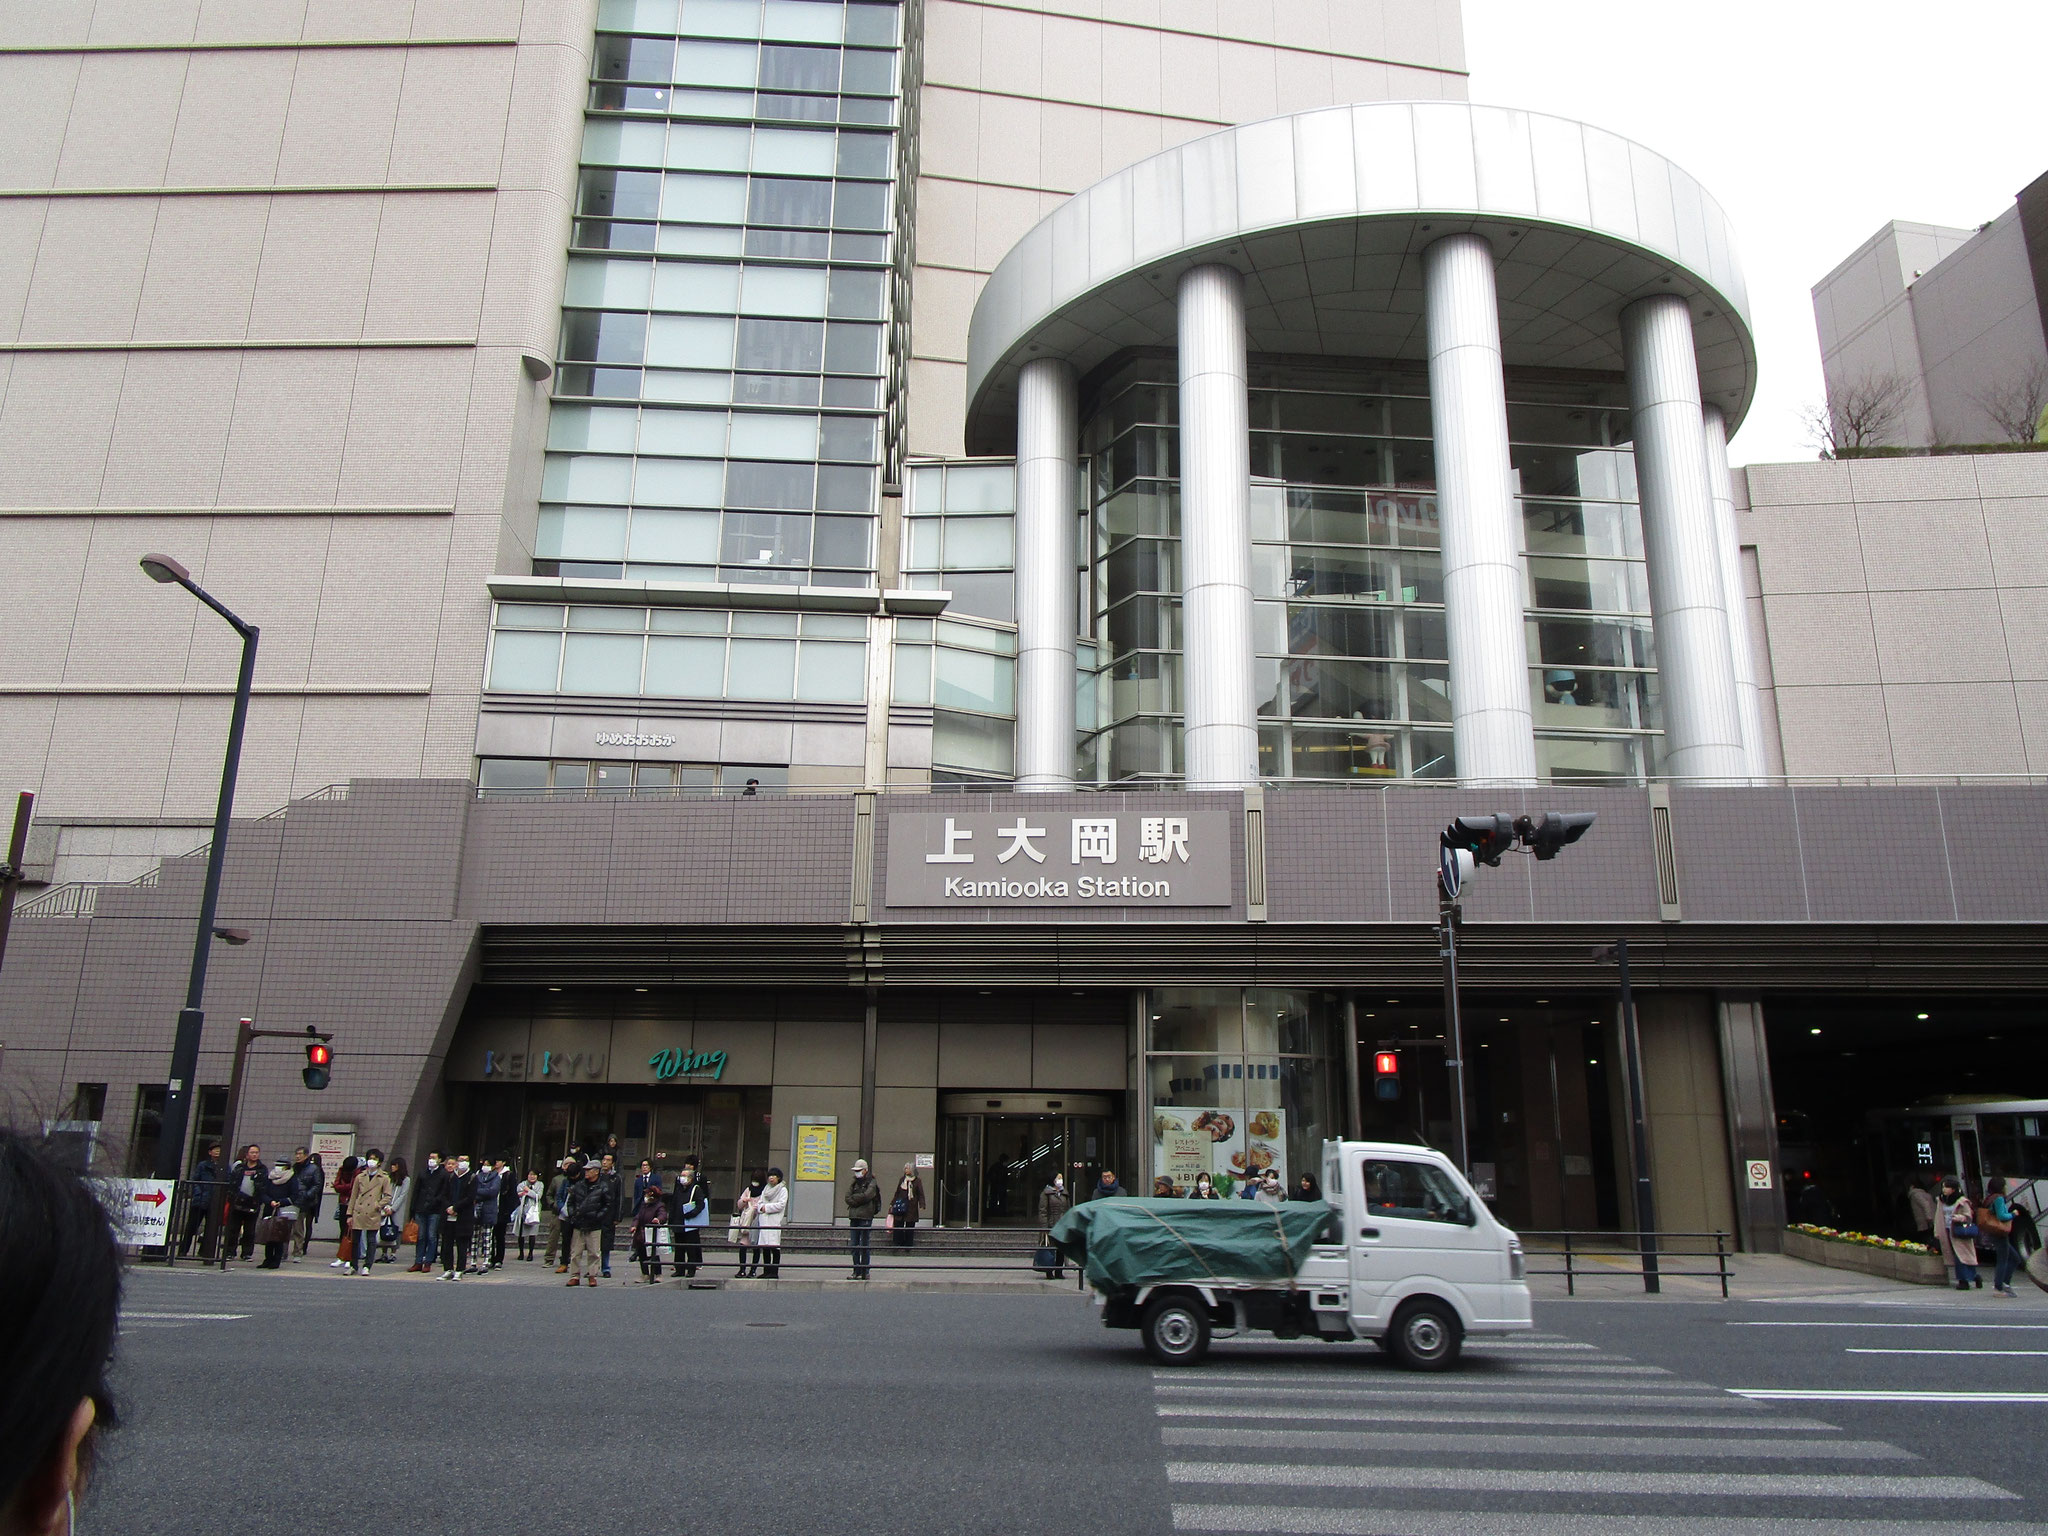 京浜急行線「上大岡」駅直結のバスターミナルから横浜市営バスを利用